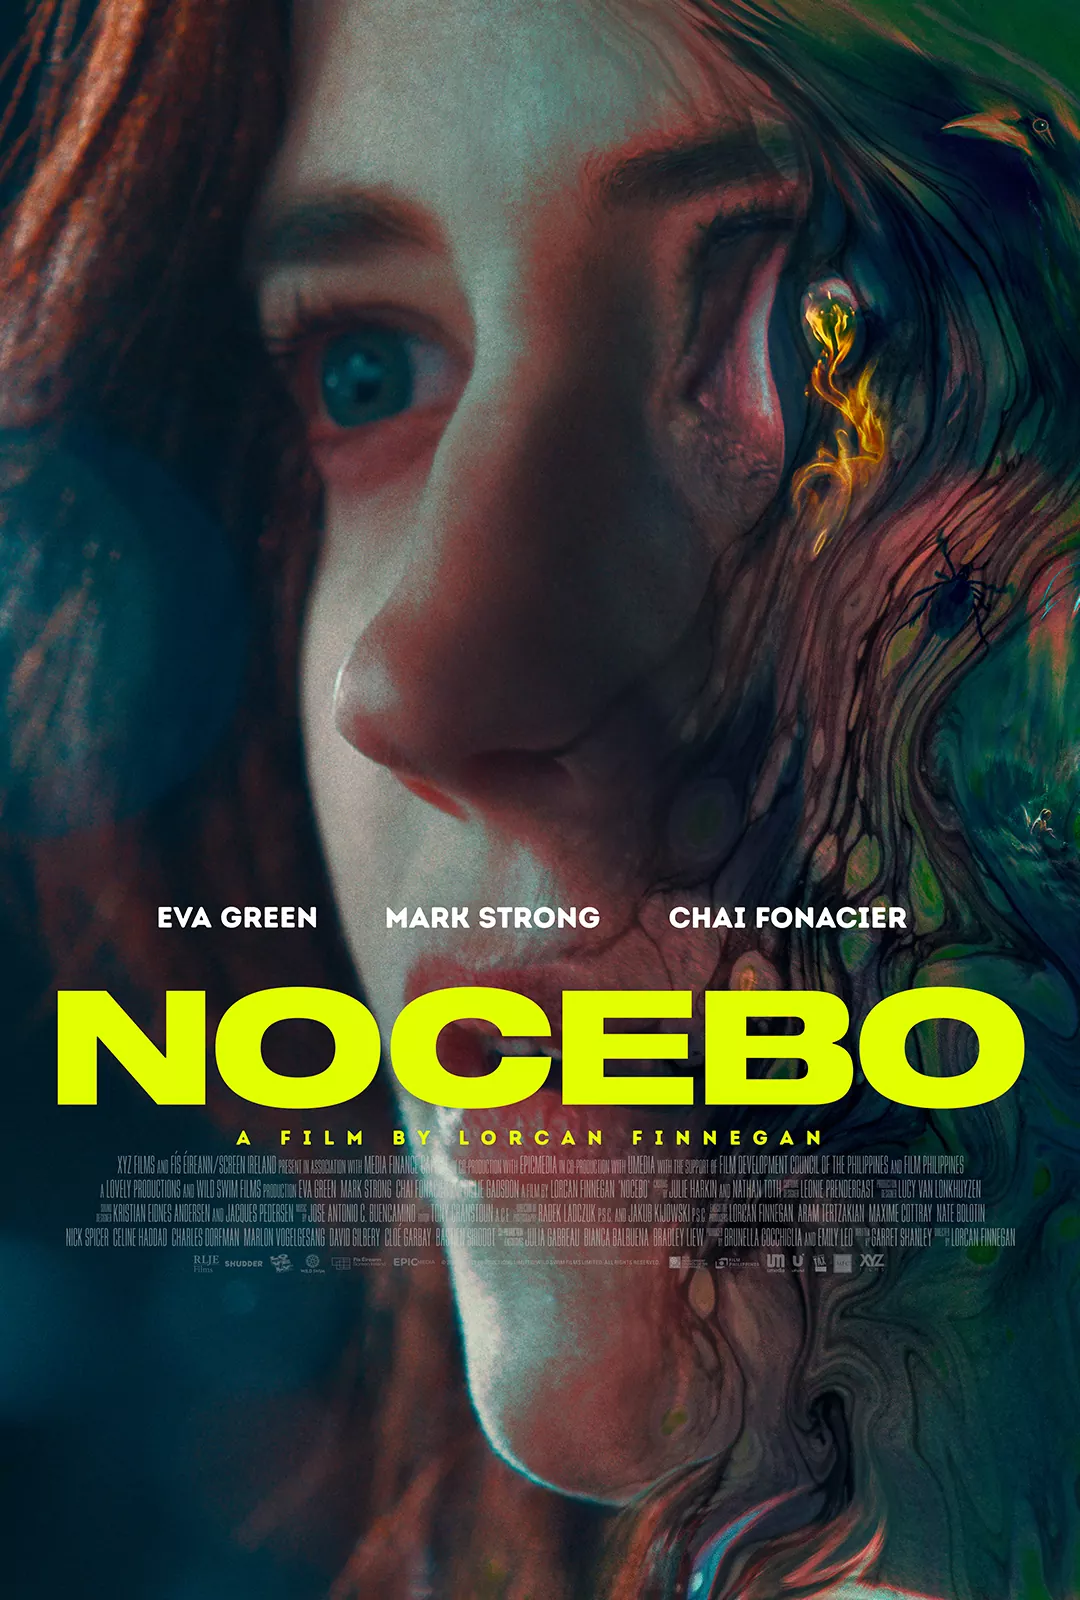 Trailer Από Το Θρίλερ "Nocebo"